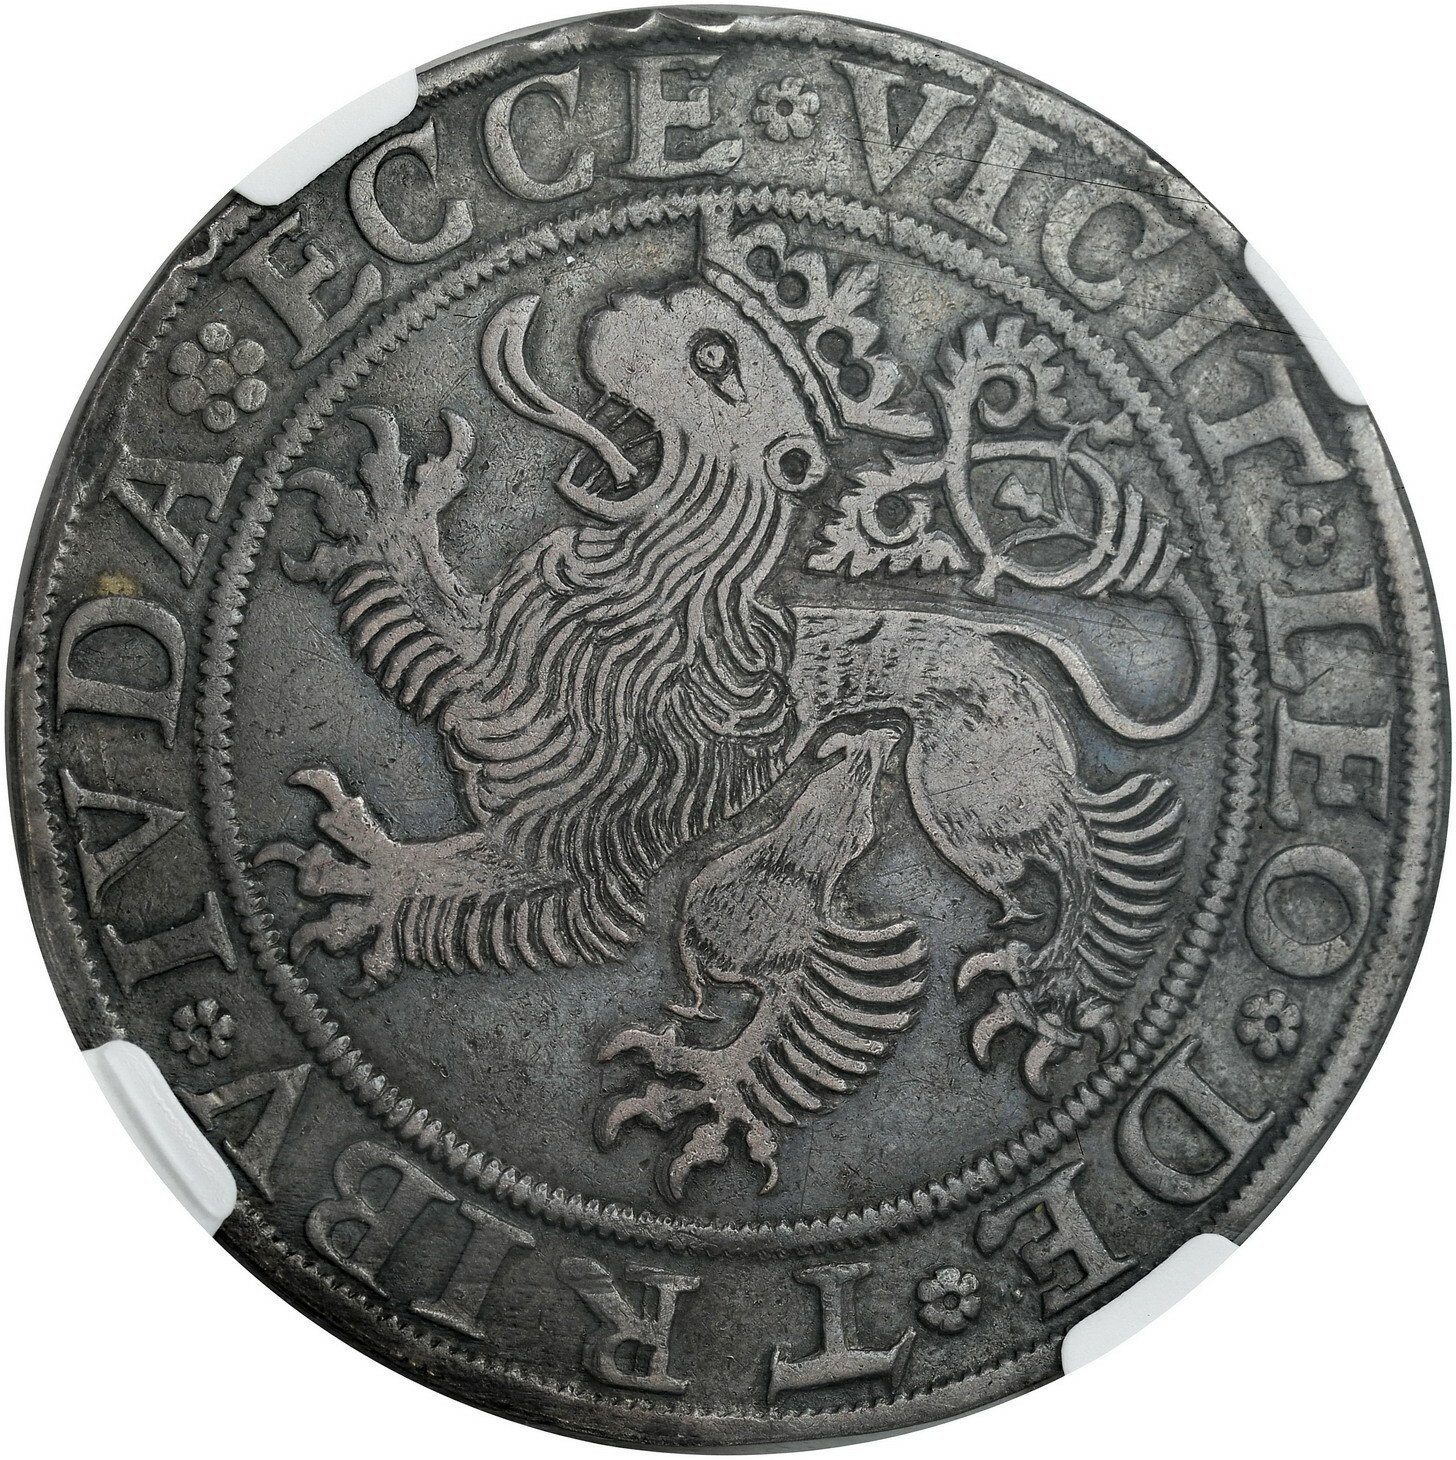 Powiązane z Polską. Śląsk. Ferdynand I (1527-1564). Talar miejski 1544, Wrocław NGC XF45 - RZADKI